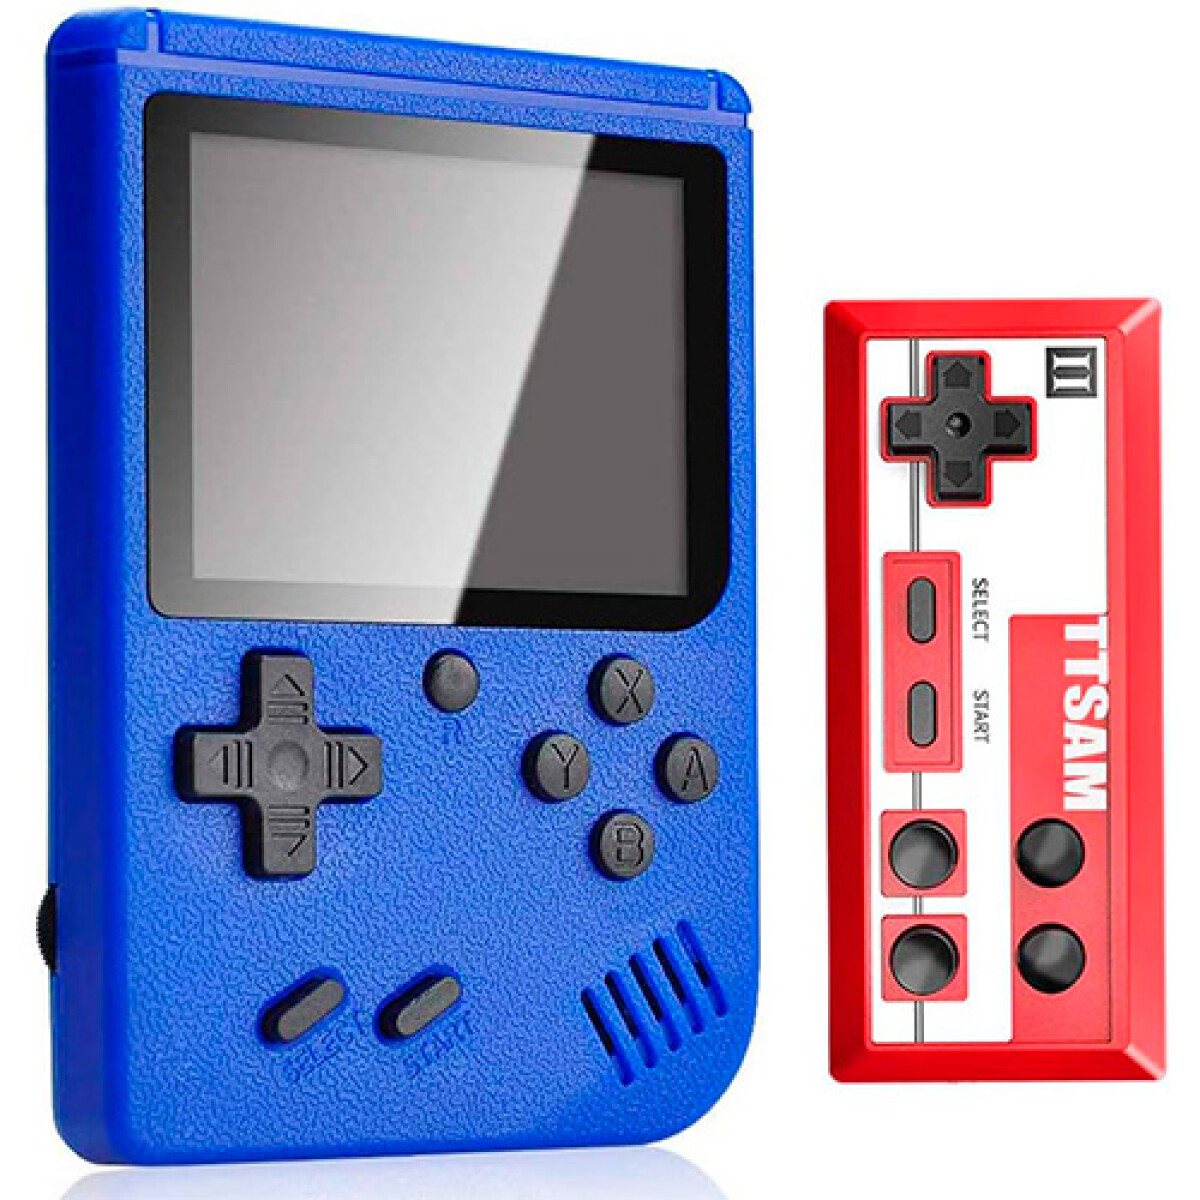 Consola de Juegos Portátil Retro con Control - Azul - 001 